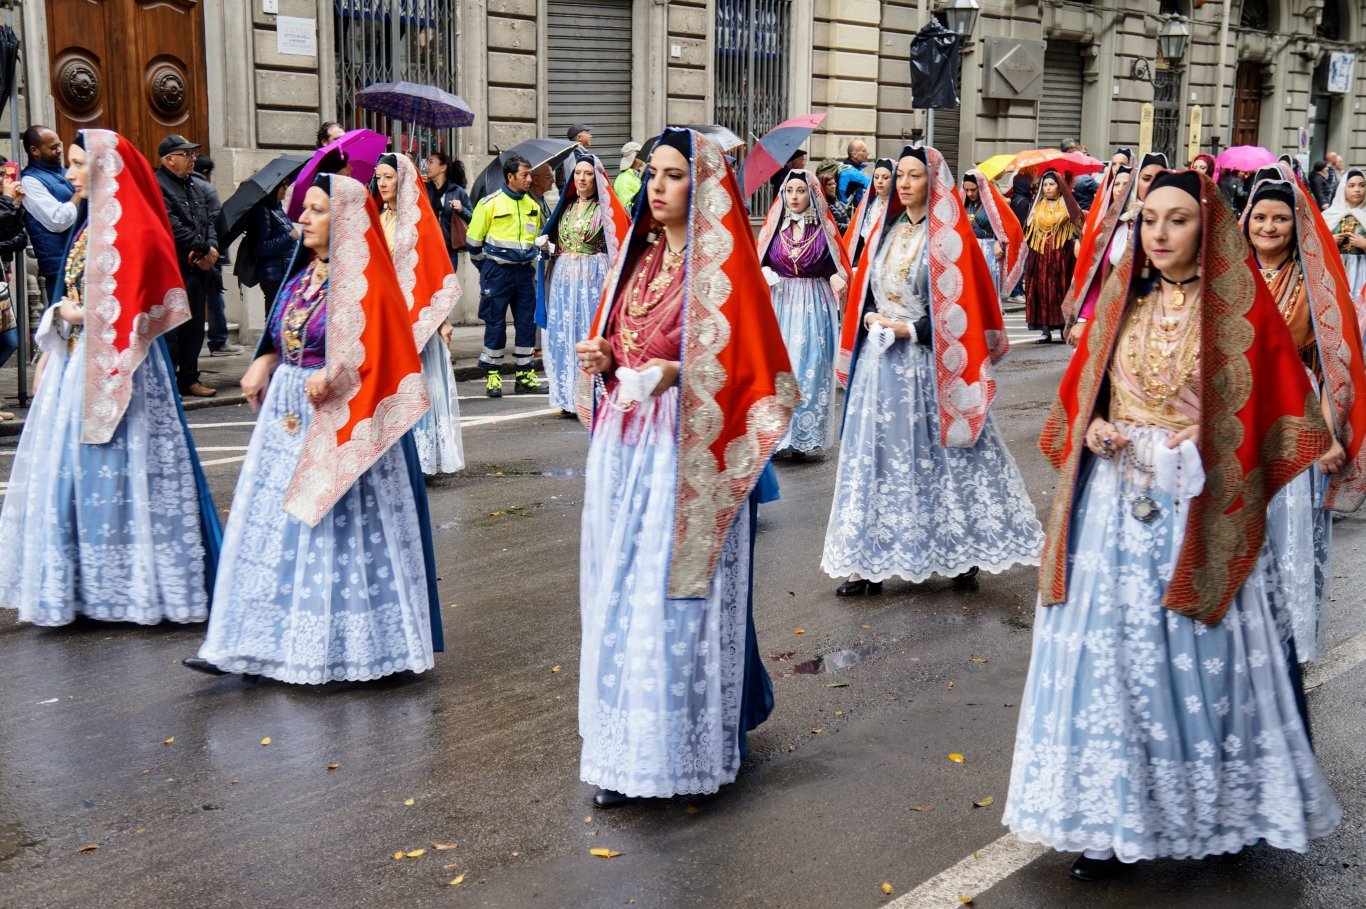 Processione in costume tradizionale durante Sant’Efisio